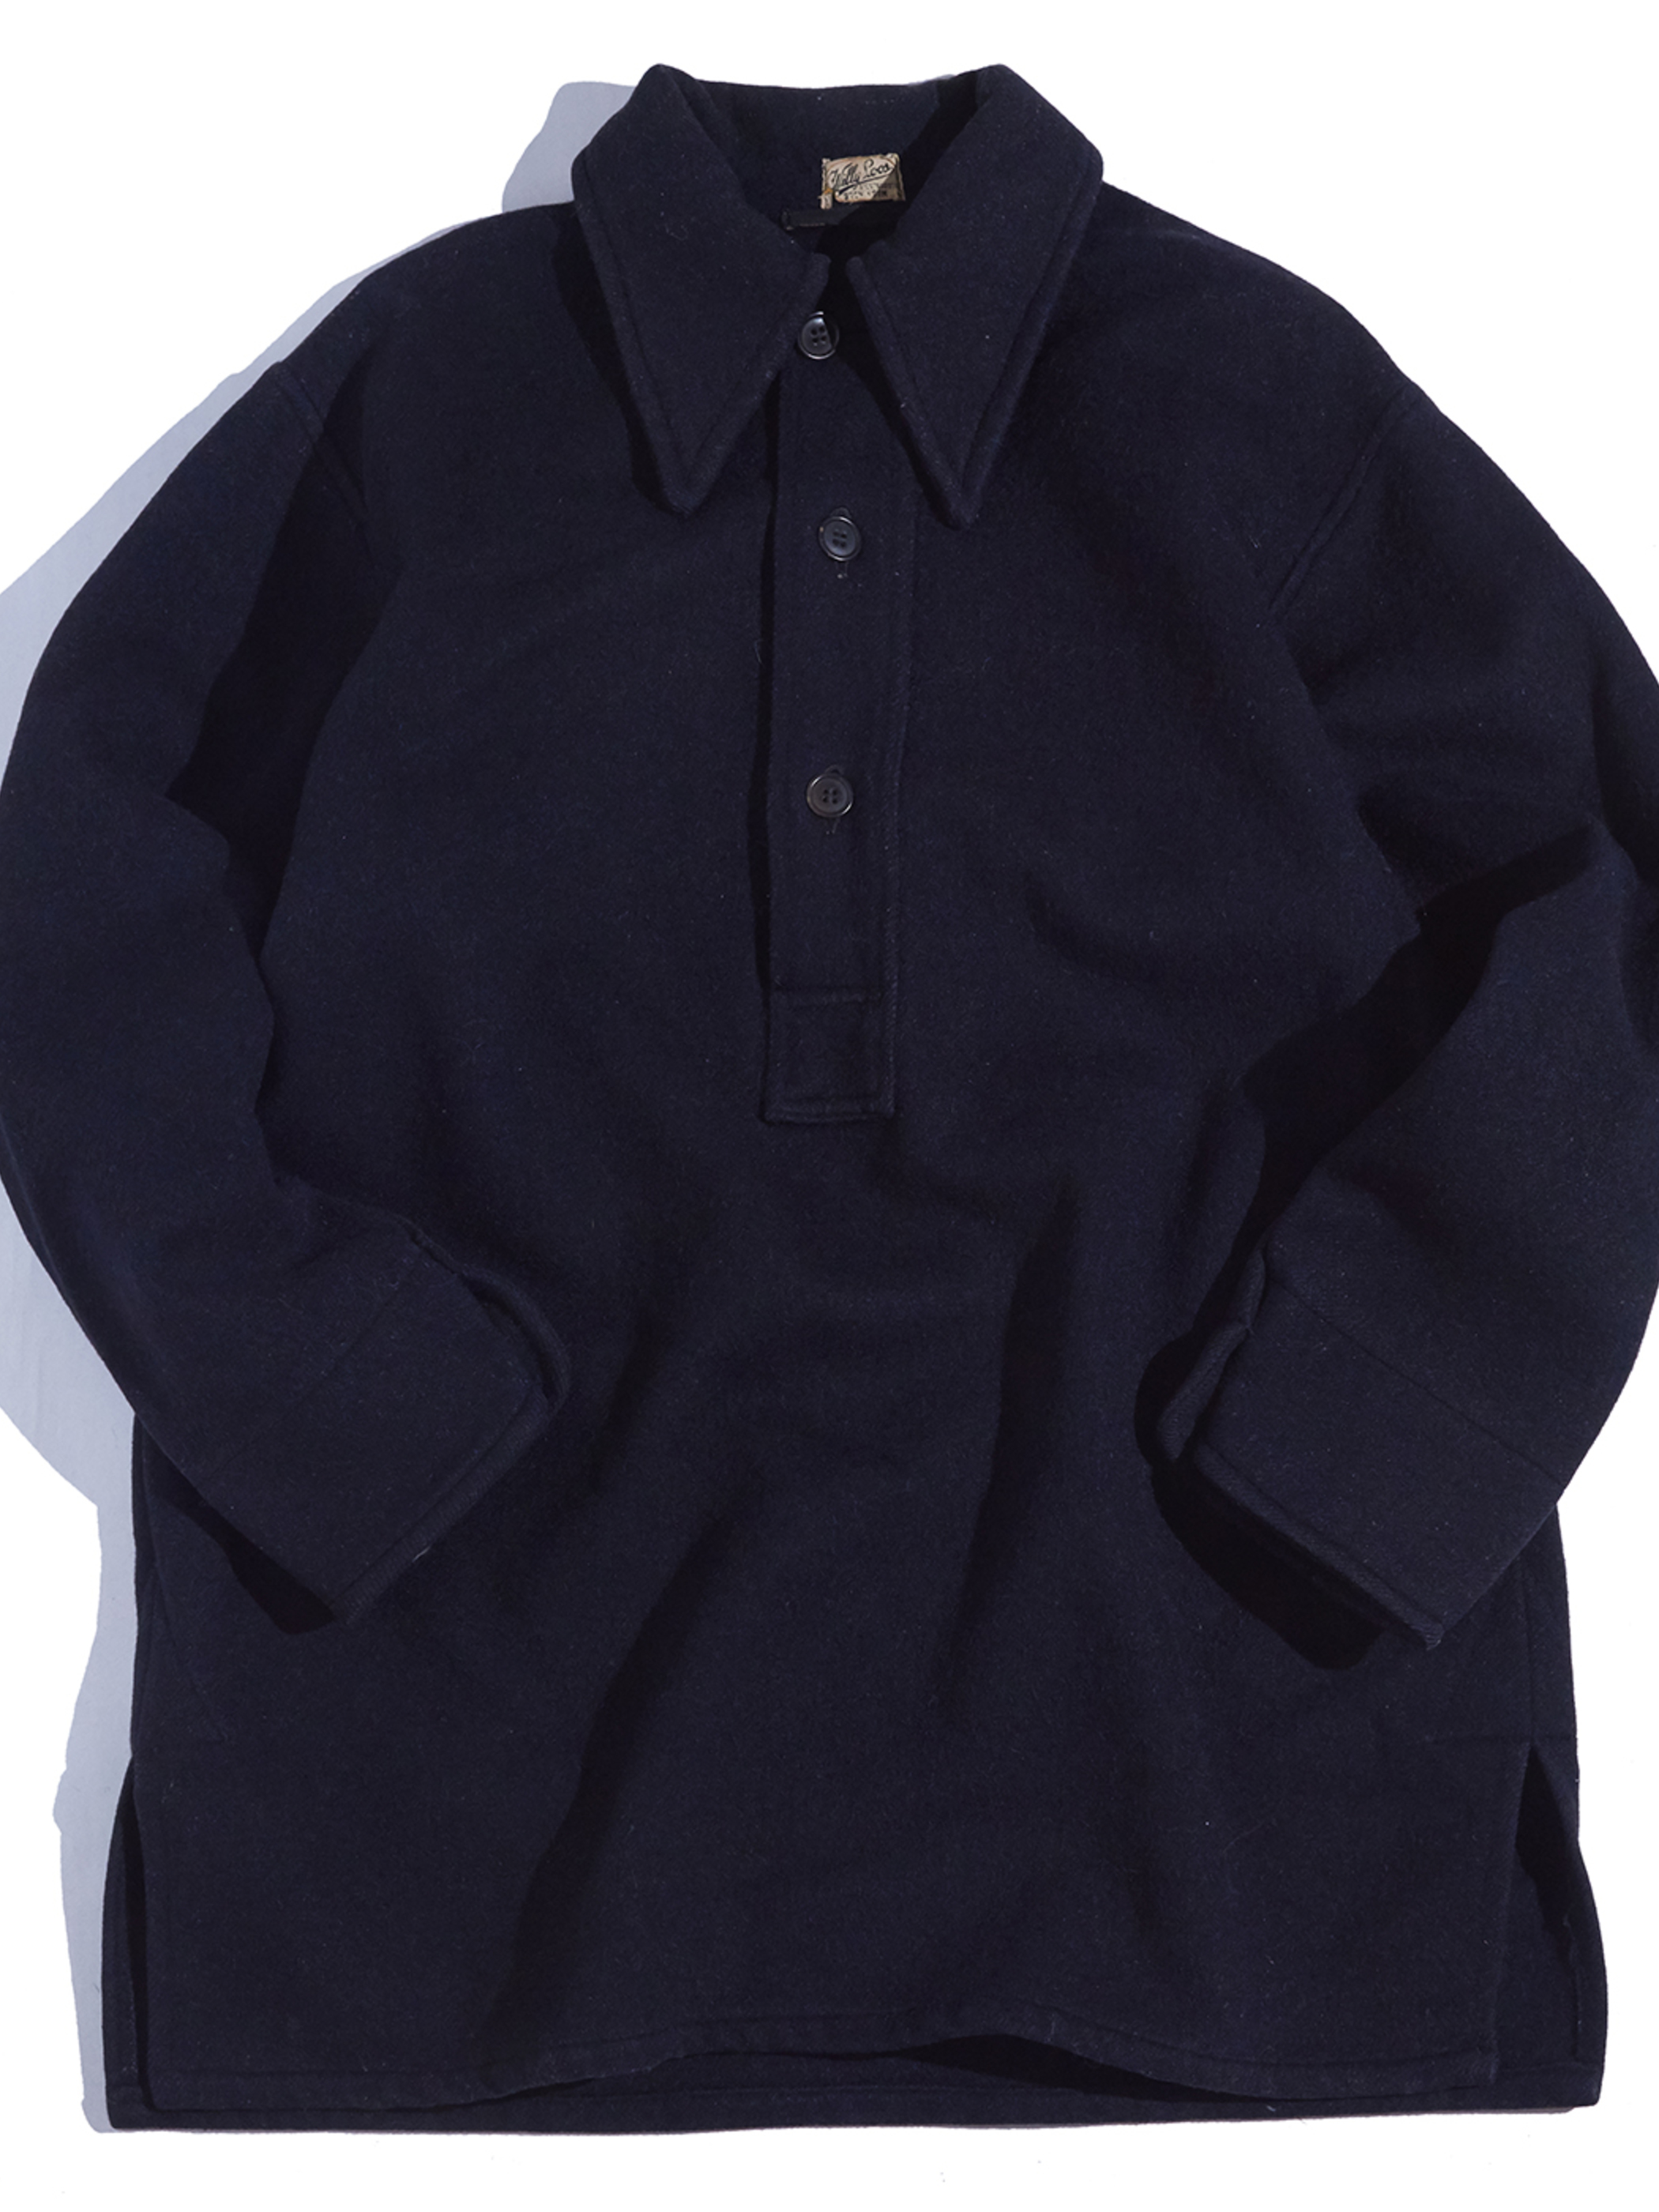 1930-40s ? "unknown" wool melton pullover shirt -DARK NAVY-